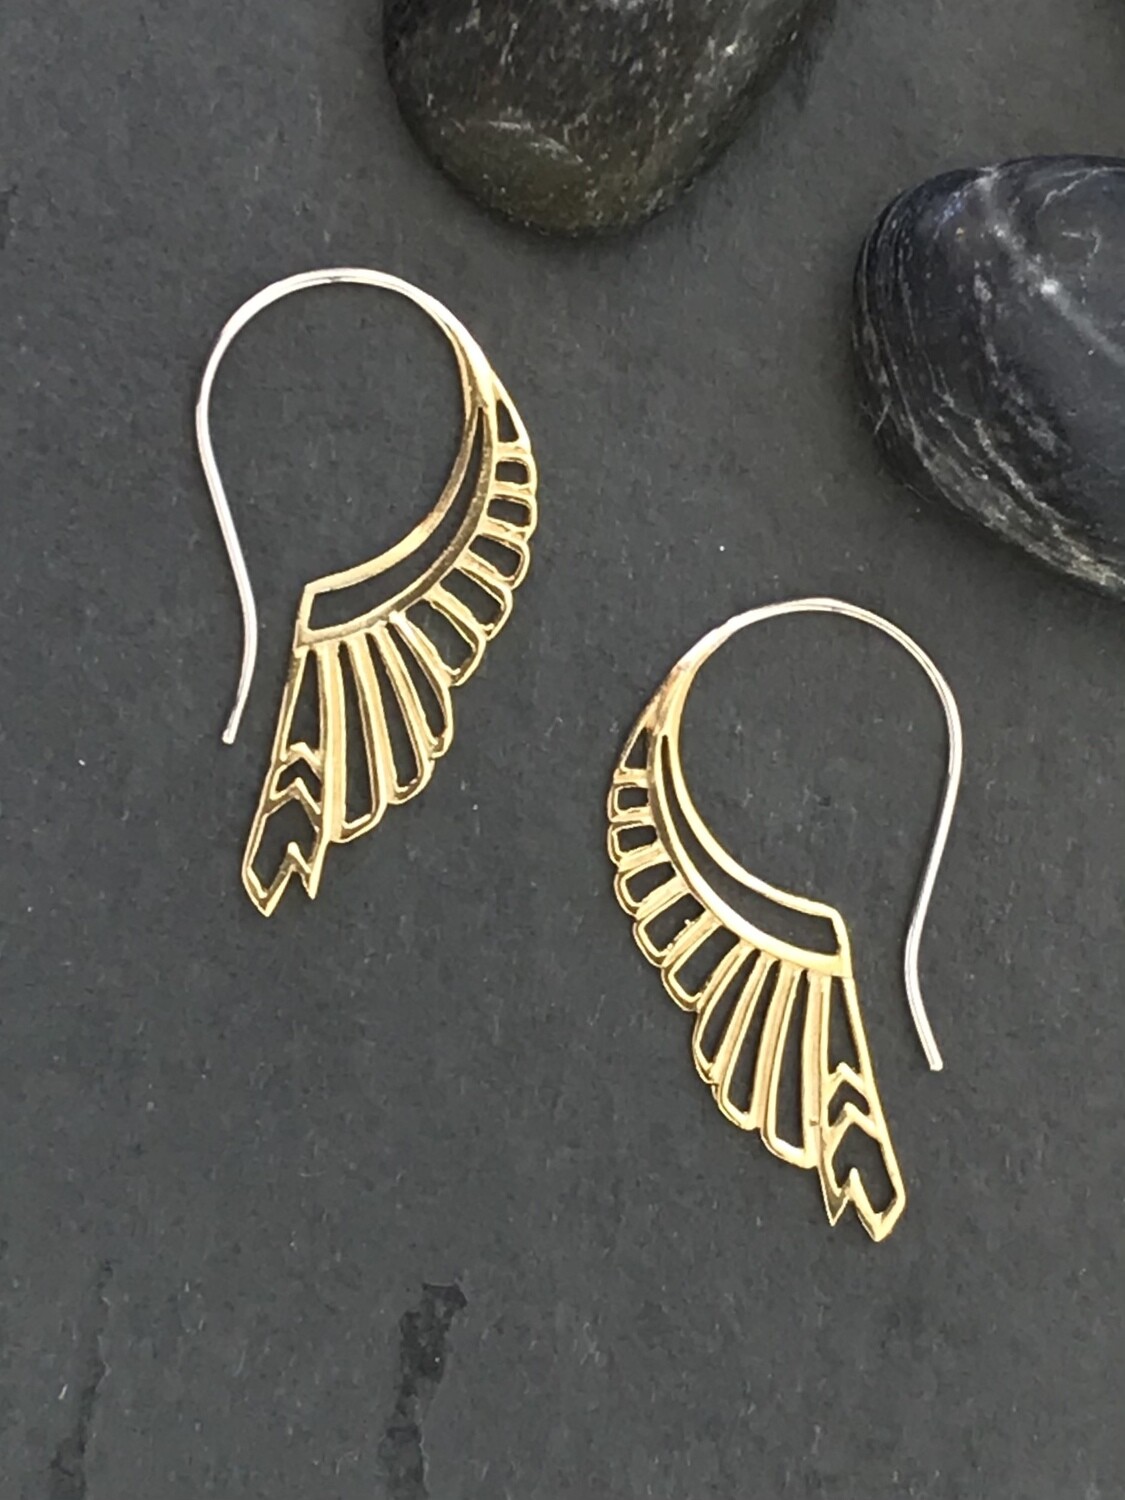 Huntress Earrings in Brass + Sterling Silver - IBE186